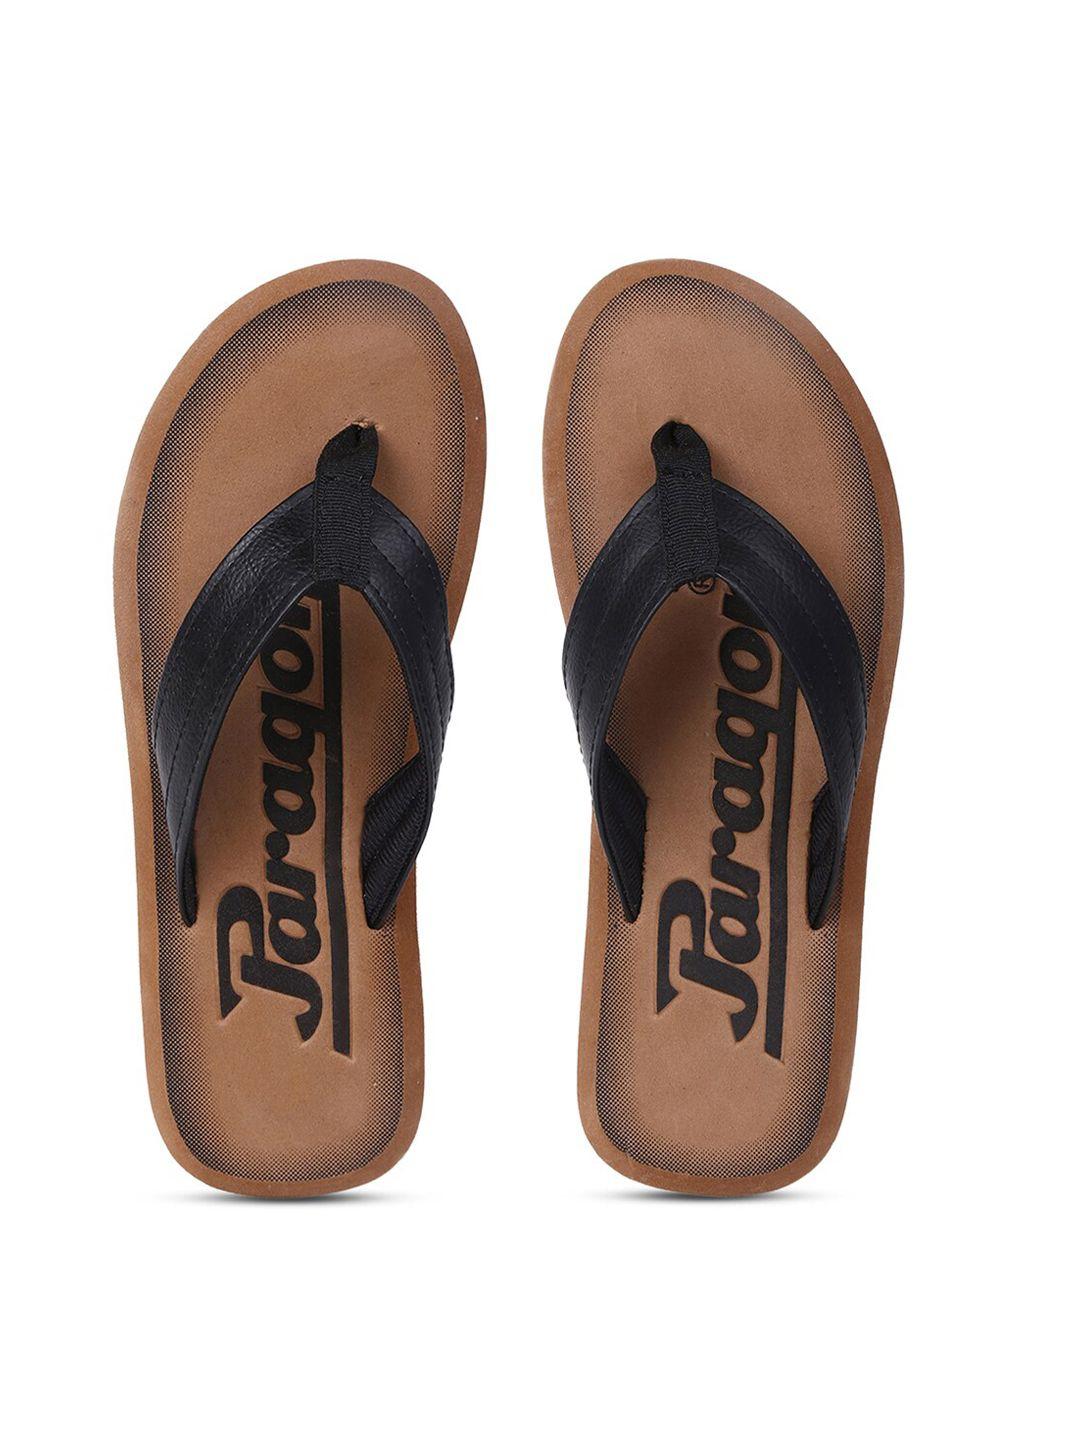 paragon-men-black-&-brown-printed-thong-flip-flops